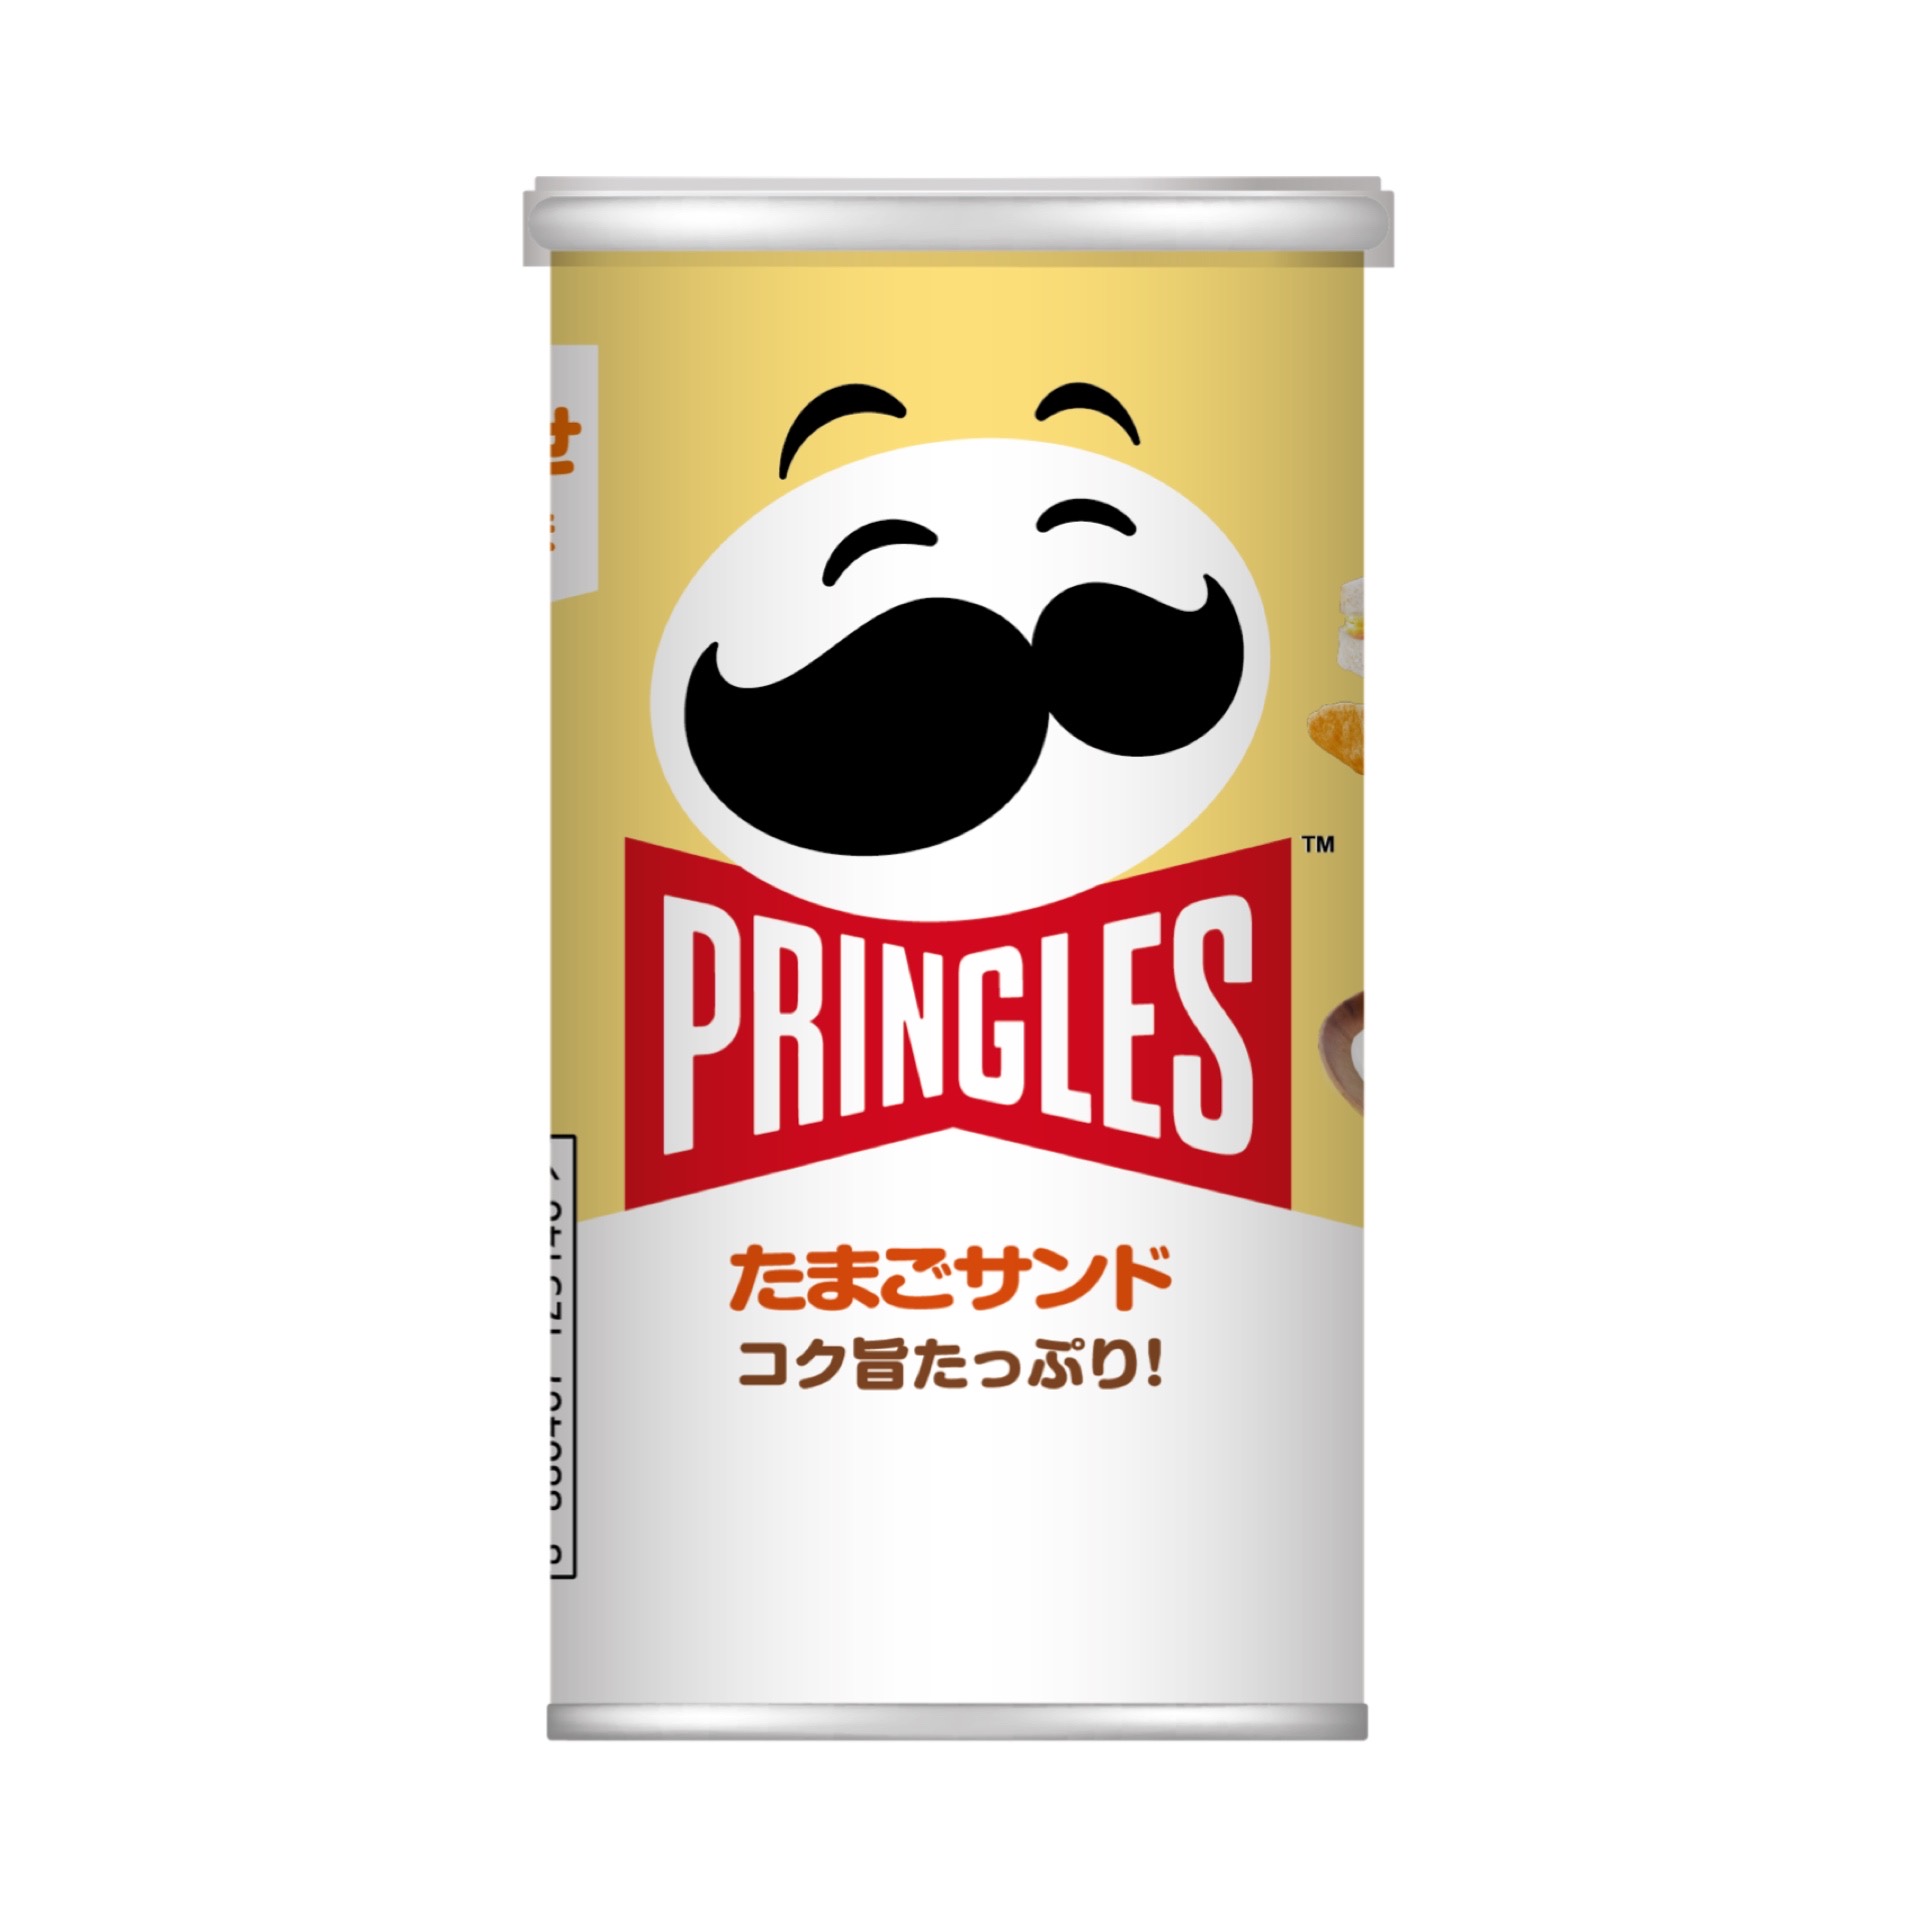 【プリングルス】サンドウィッチの大定番がユニークなフレーバーとして新登場❗️「プリングルズ たまごサンド」7月4日(月)発売🐣🥪💛